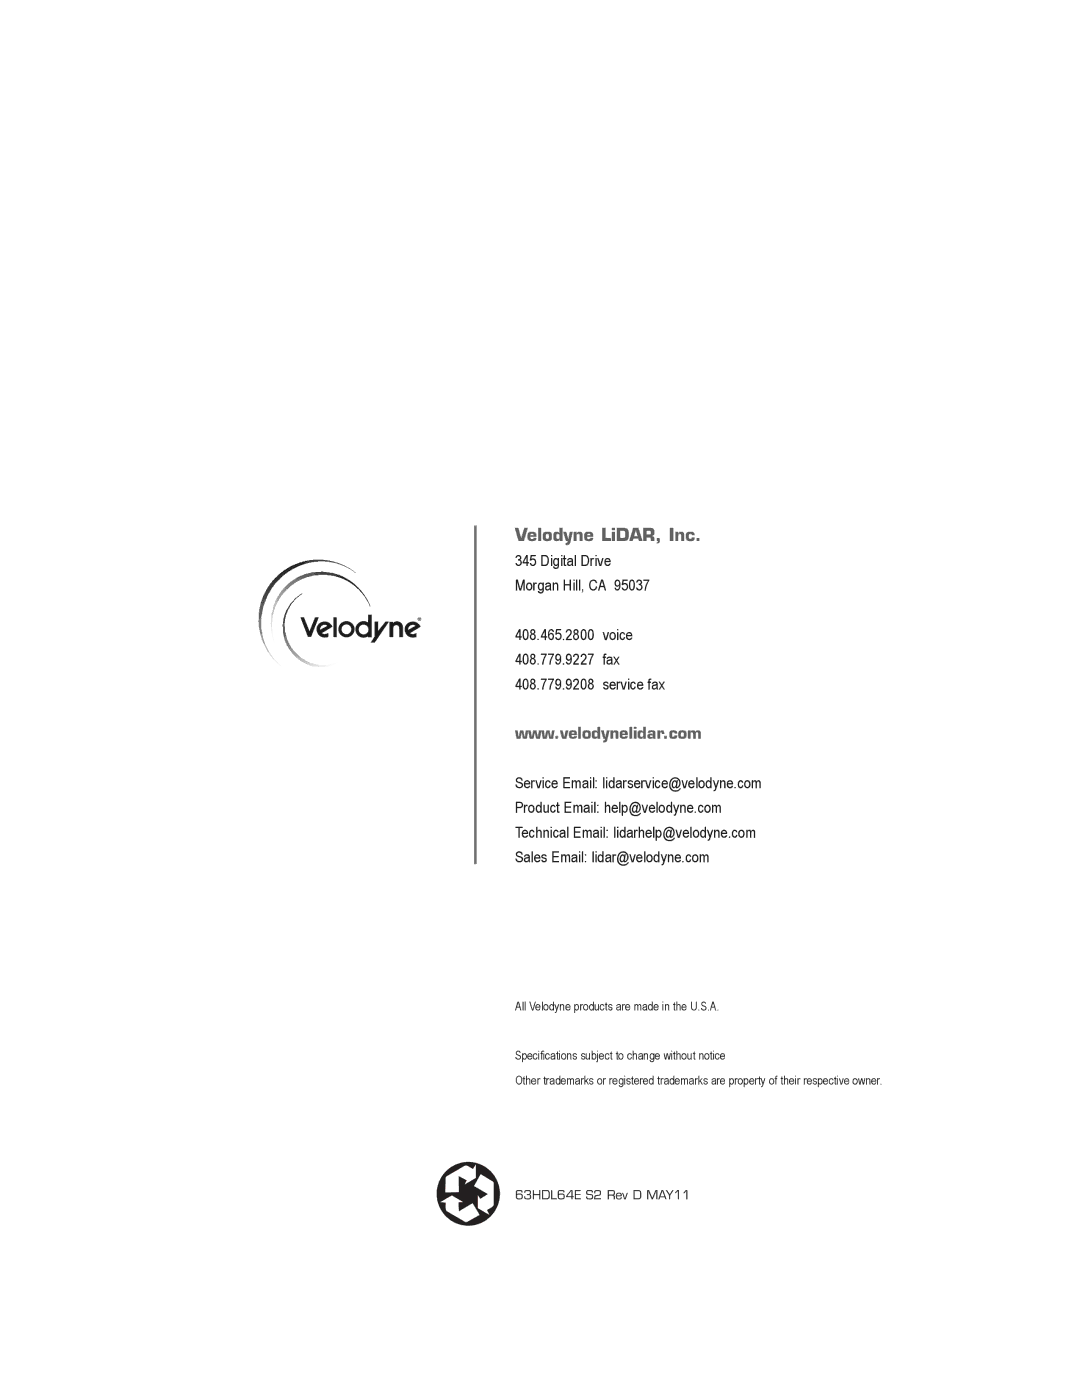 Velodyne Acoustics HDL-64E S2.1 user manual Velodyne LiDAR, Inc 